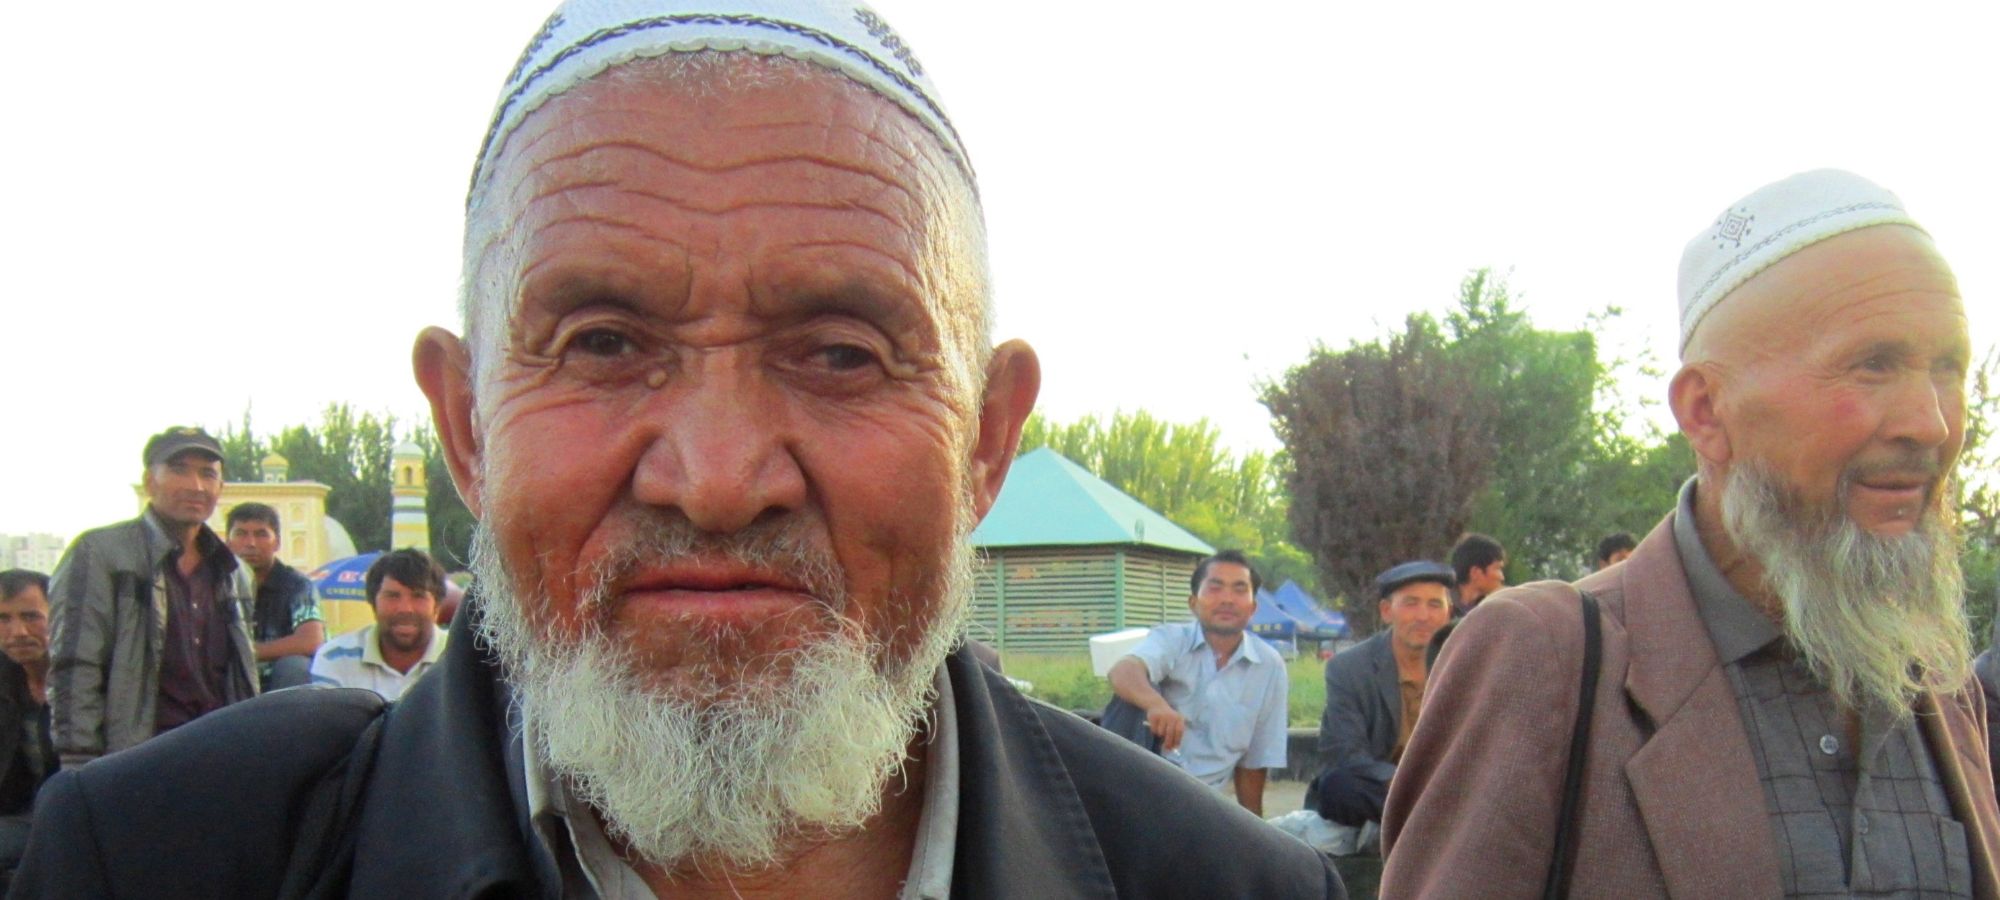 Uygur men Kashgar